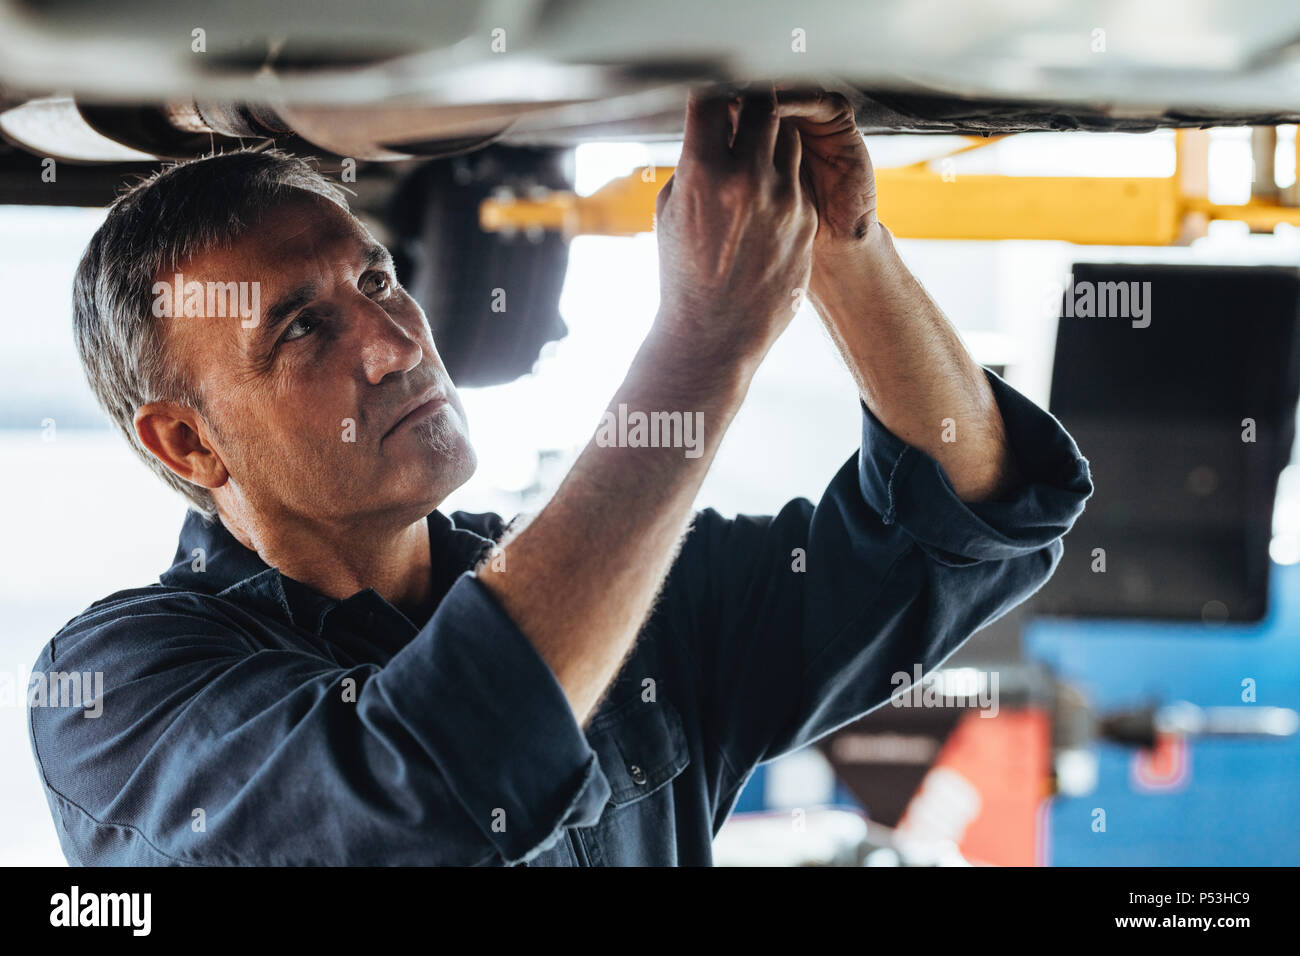 Mécanicien de voiture réparation d'une voiture à levée garage. Les hommes de réparation Auto réparation d'une voiture en station-service. Banque D'Images